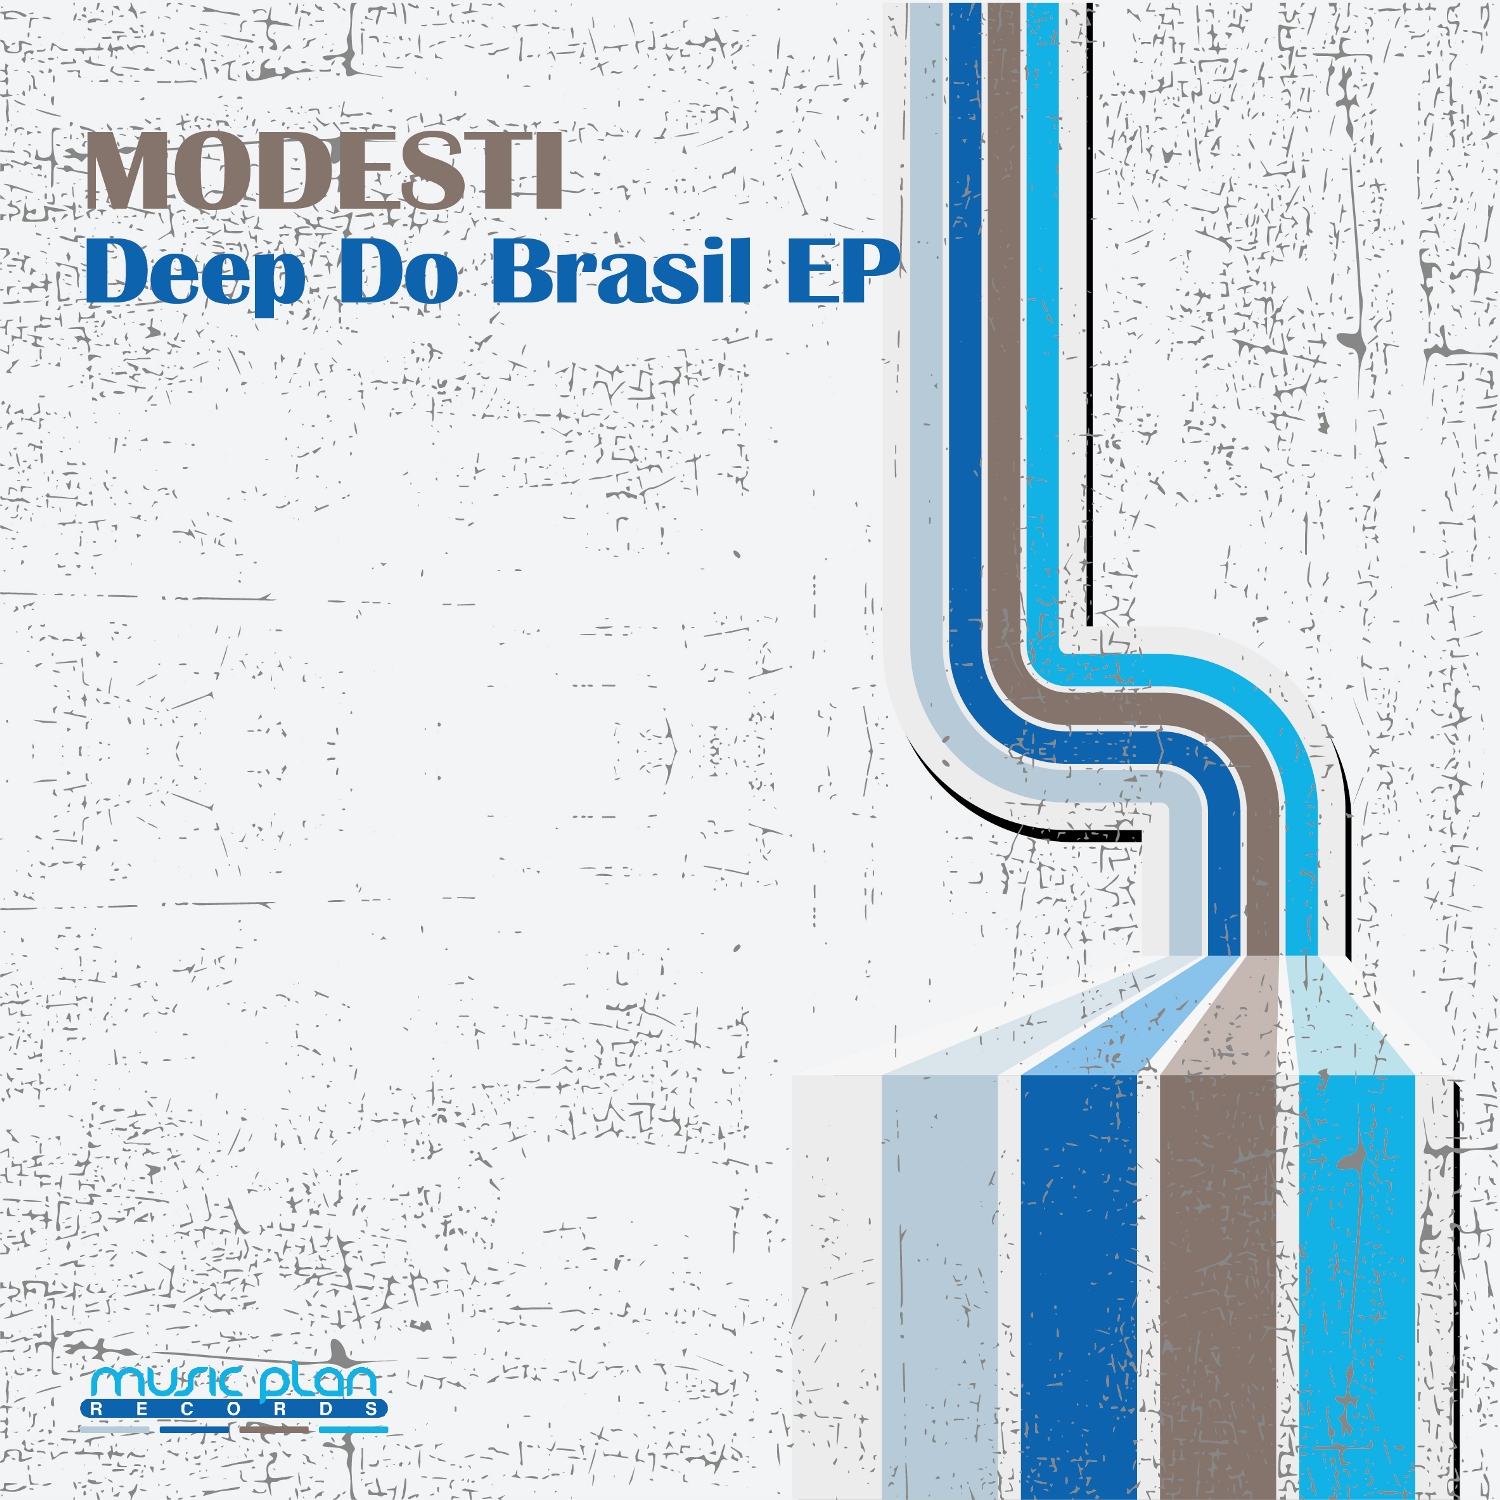 Deep Do Brasil EP